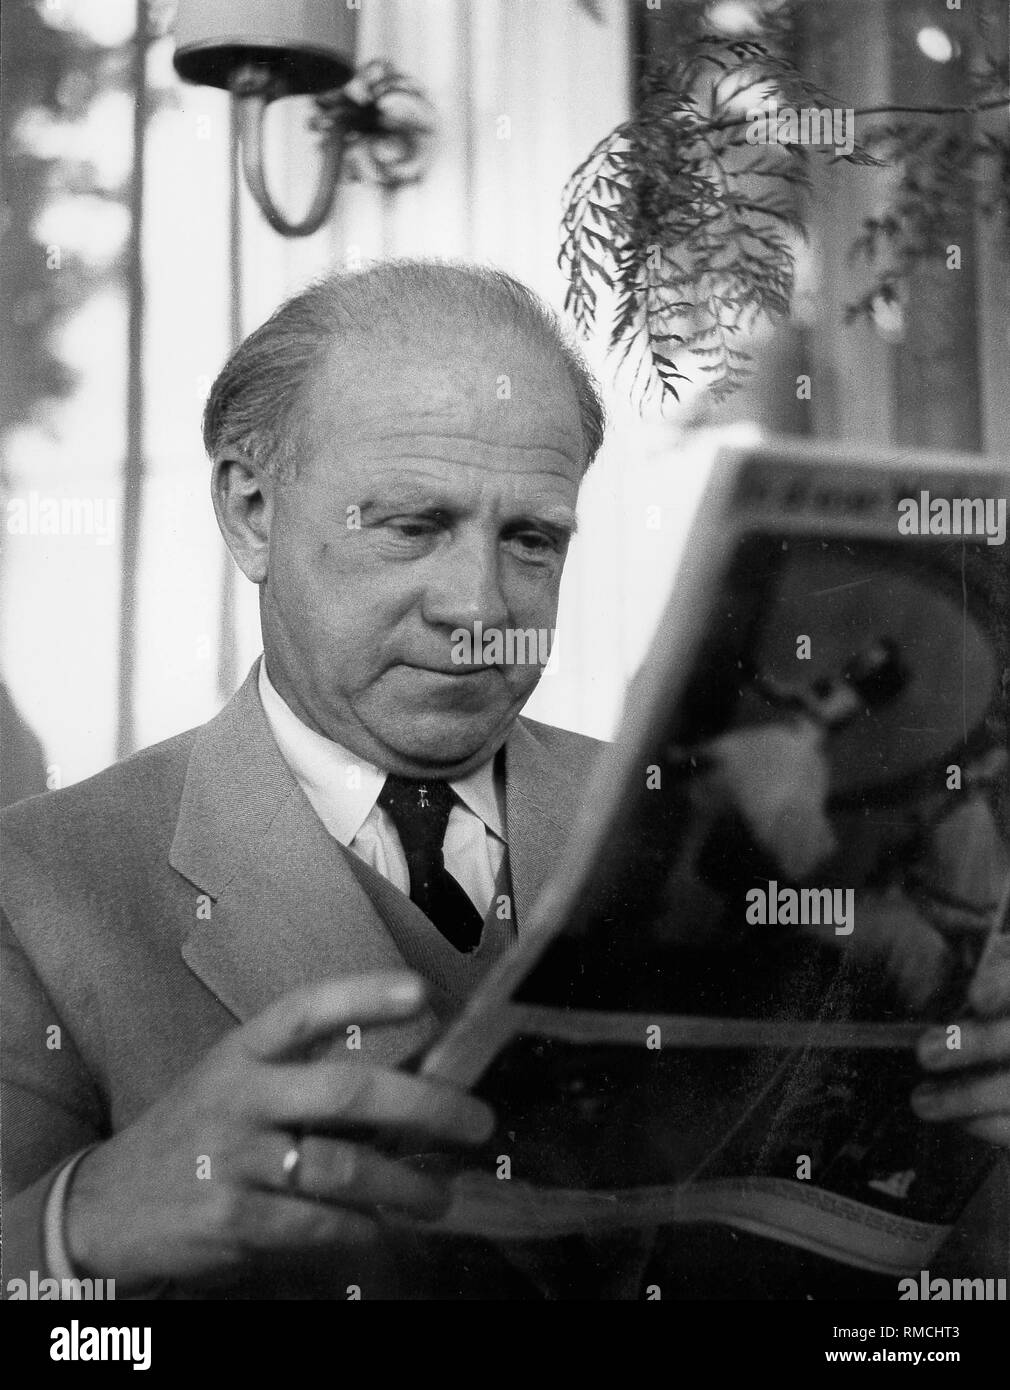 Werner Heisenberg, Prix Nobel de physique allemande (1932). La photo a été prise à la réunion du Prix Nobel, Lindau. Banque D'Images